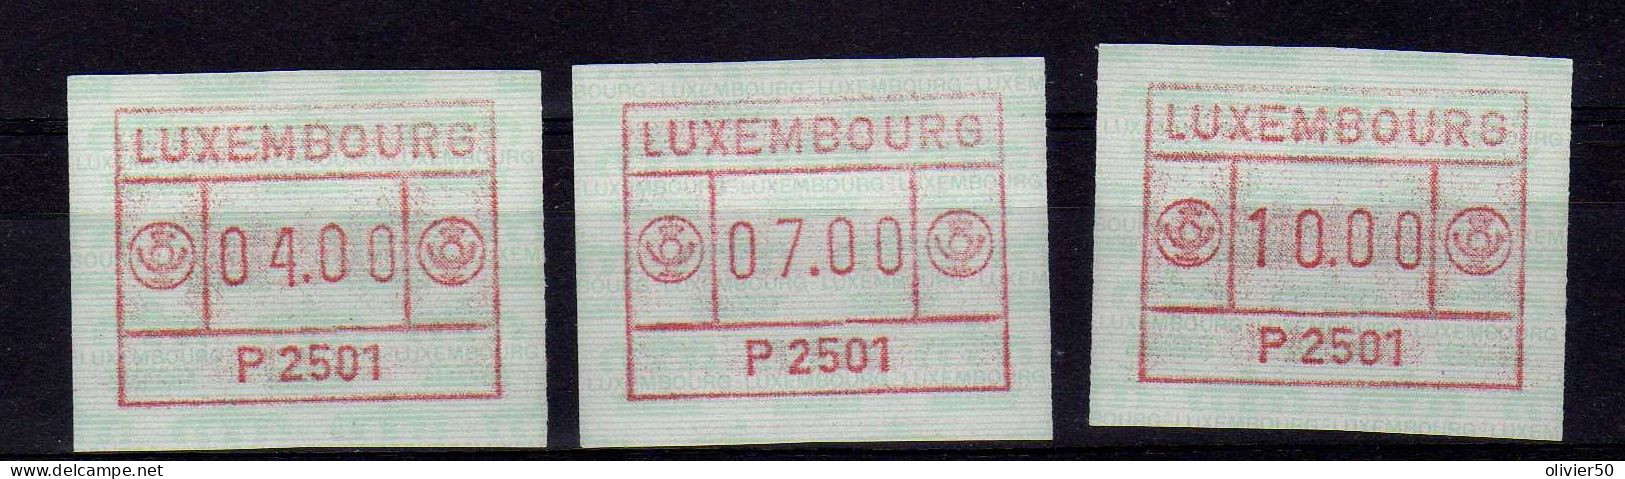 Luxembourg (1983) -  3 Timbres De Distributeur -  Neufs** - MNH - Vignettes D'affranchissement